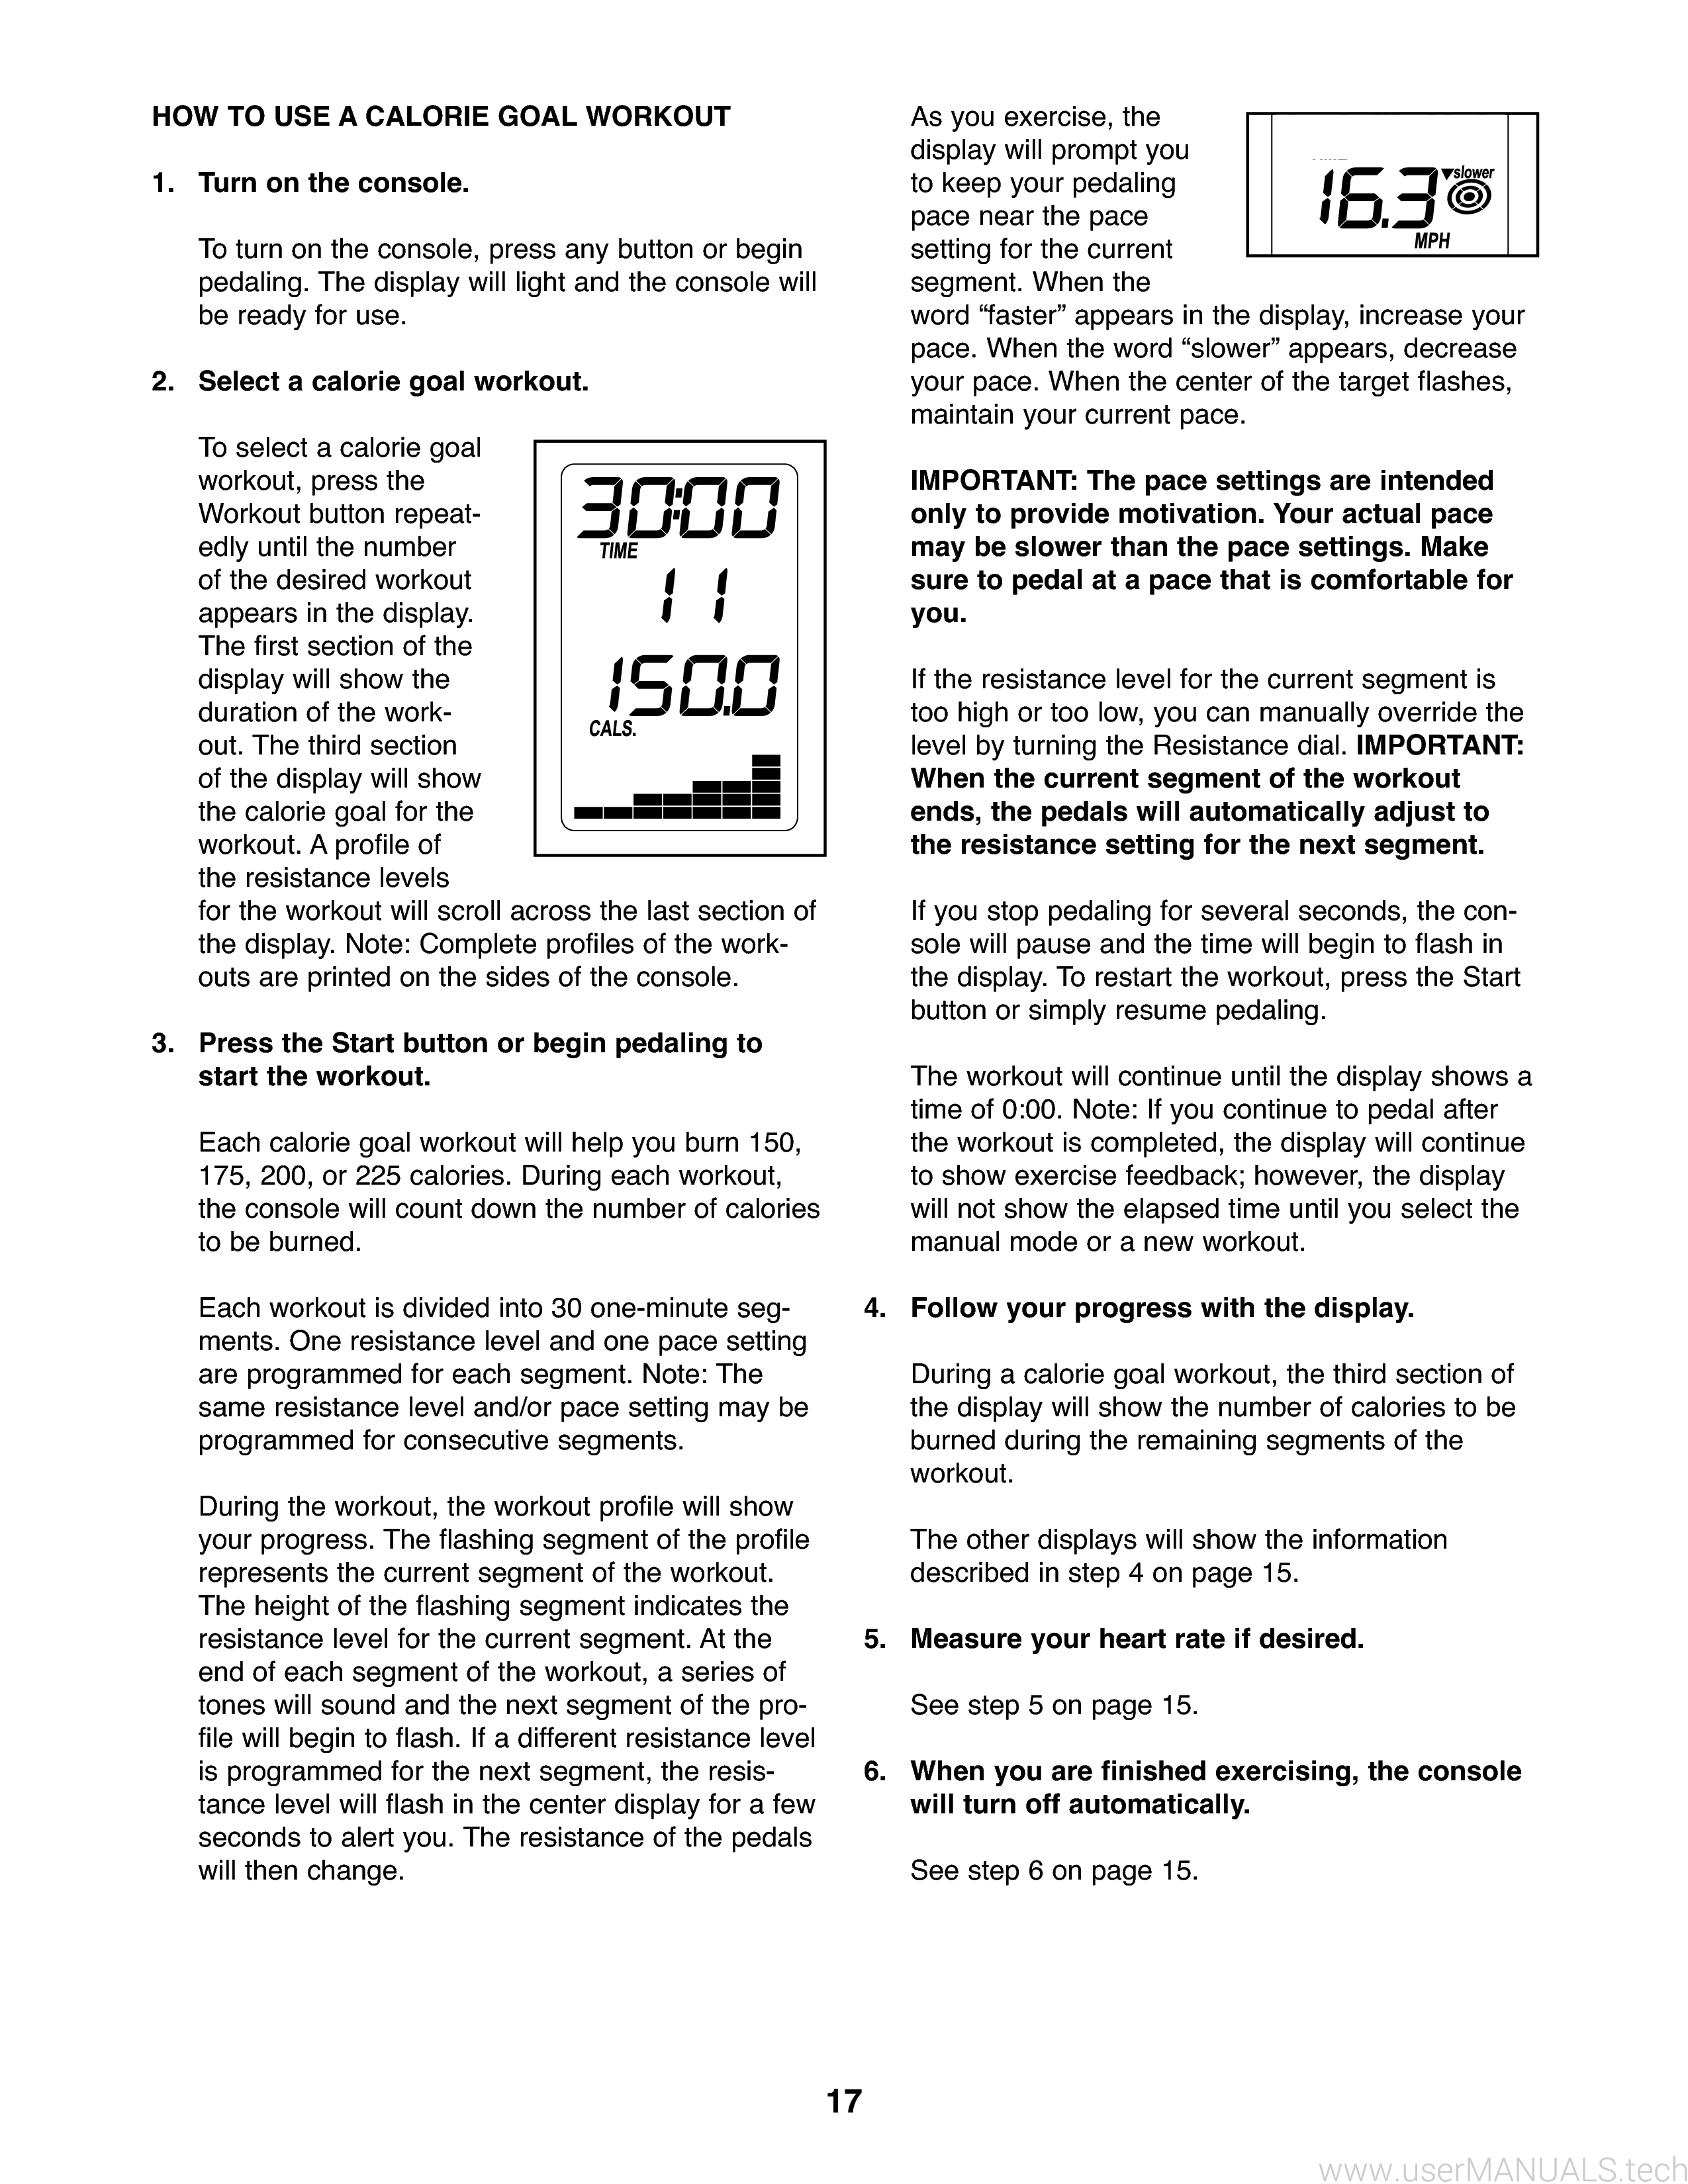 ProForm Xp 400 R Manual, Page: 2